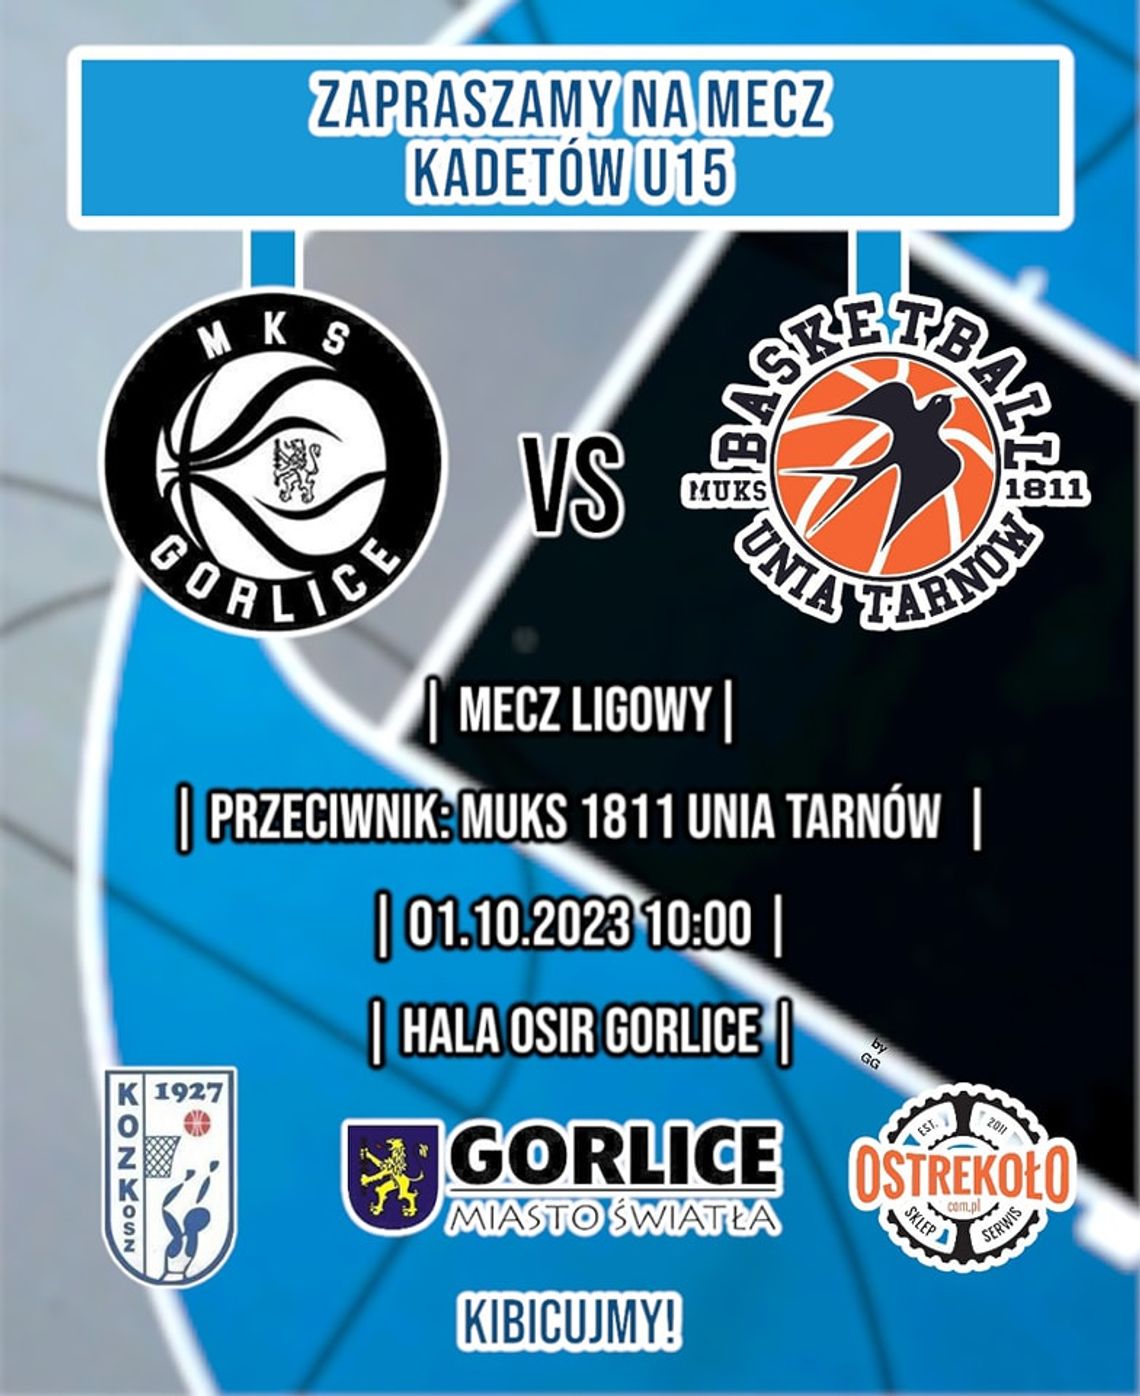 Mecz koszykówki kadetów U-15: MKS Gorlice - Unia Tarnów | halogorlice.info